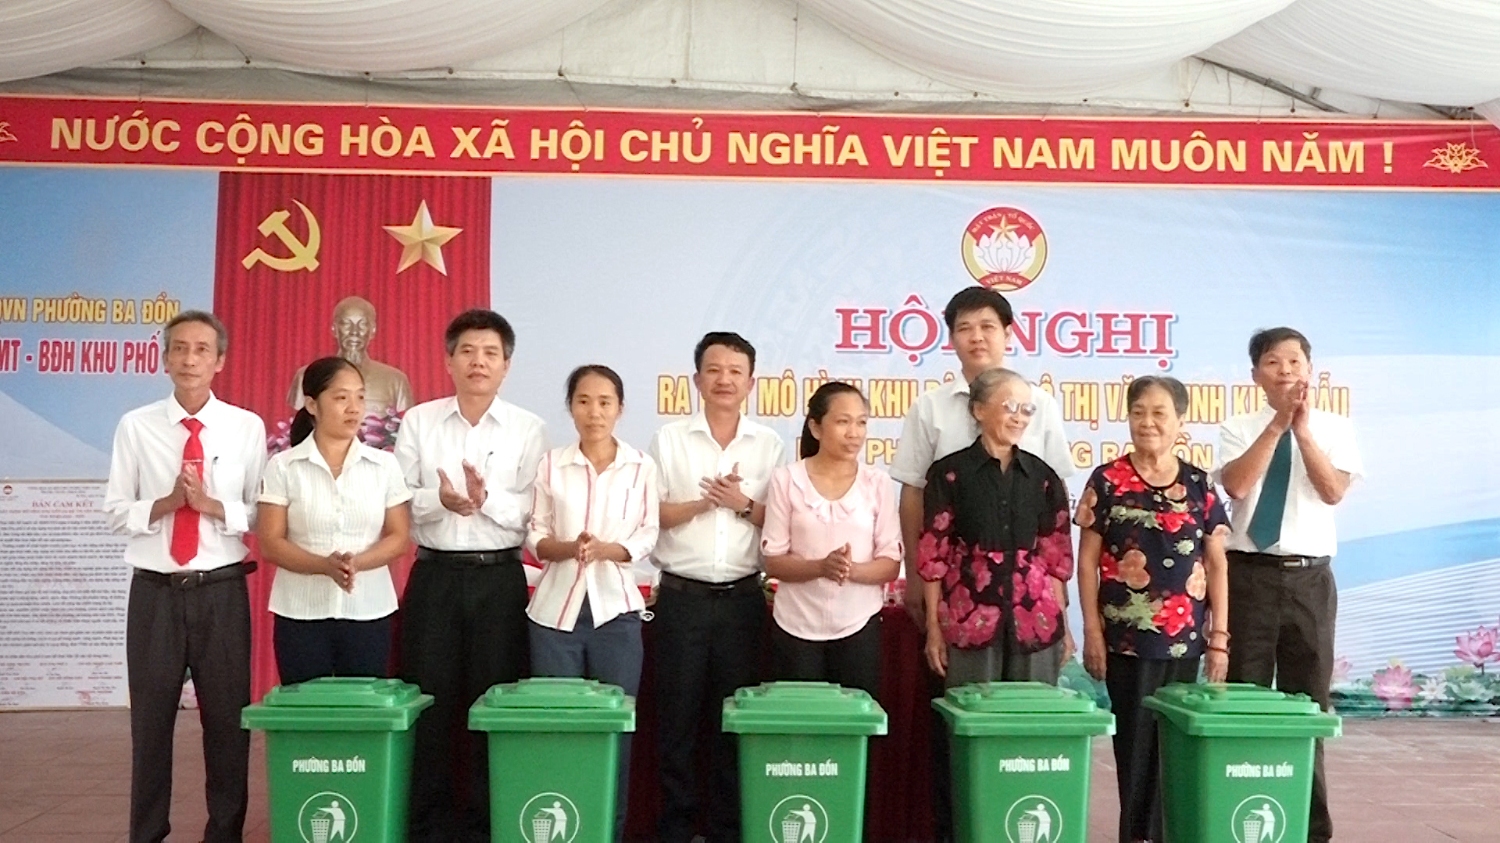 Ban mặt trận UB phường Ba Đồn tặng thằng đựng rác cho các gia đình có hoàn cảnh khó khăn